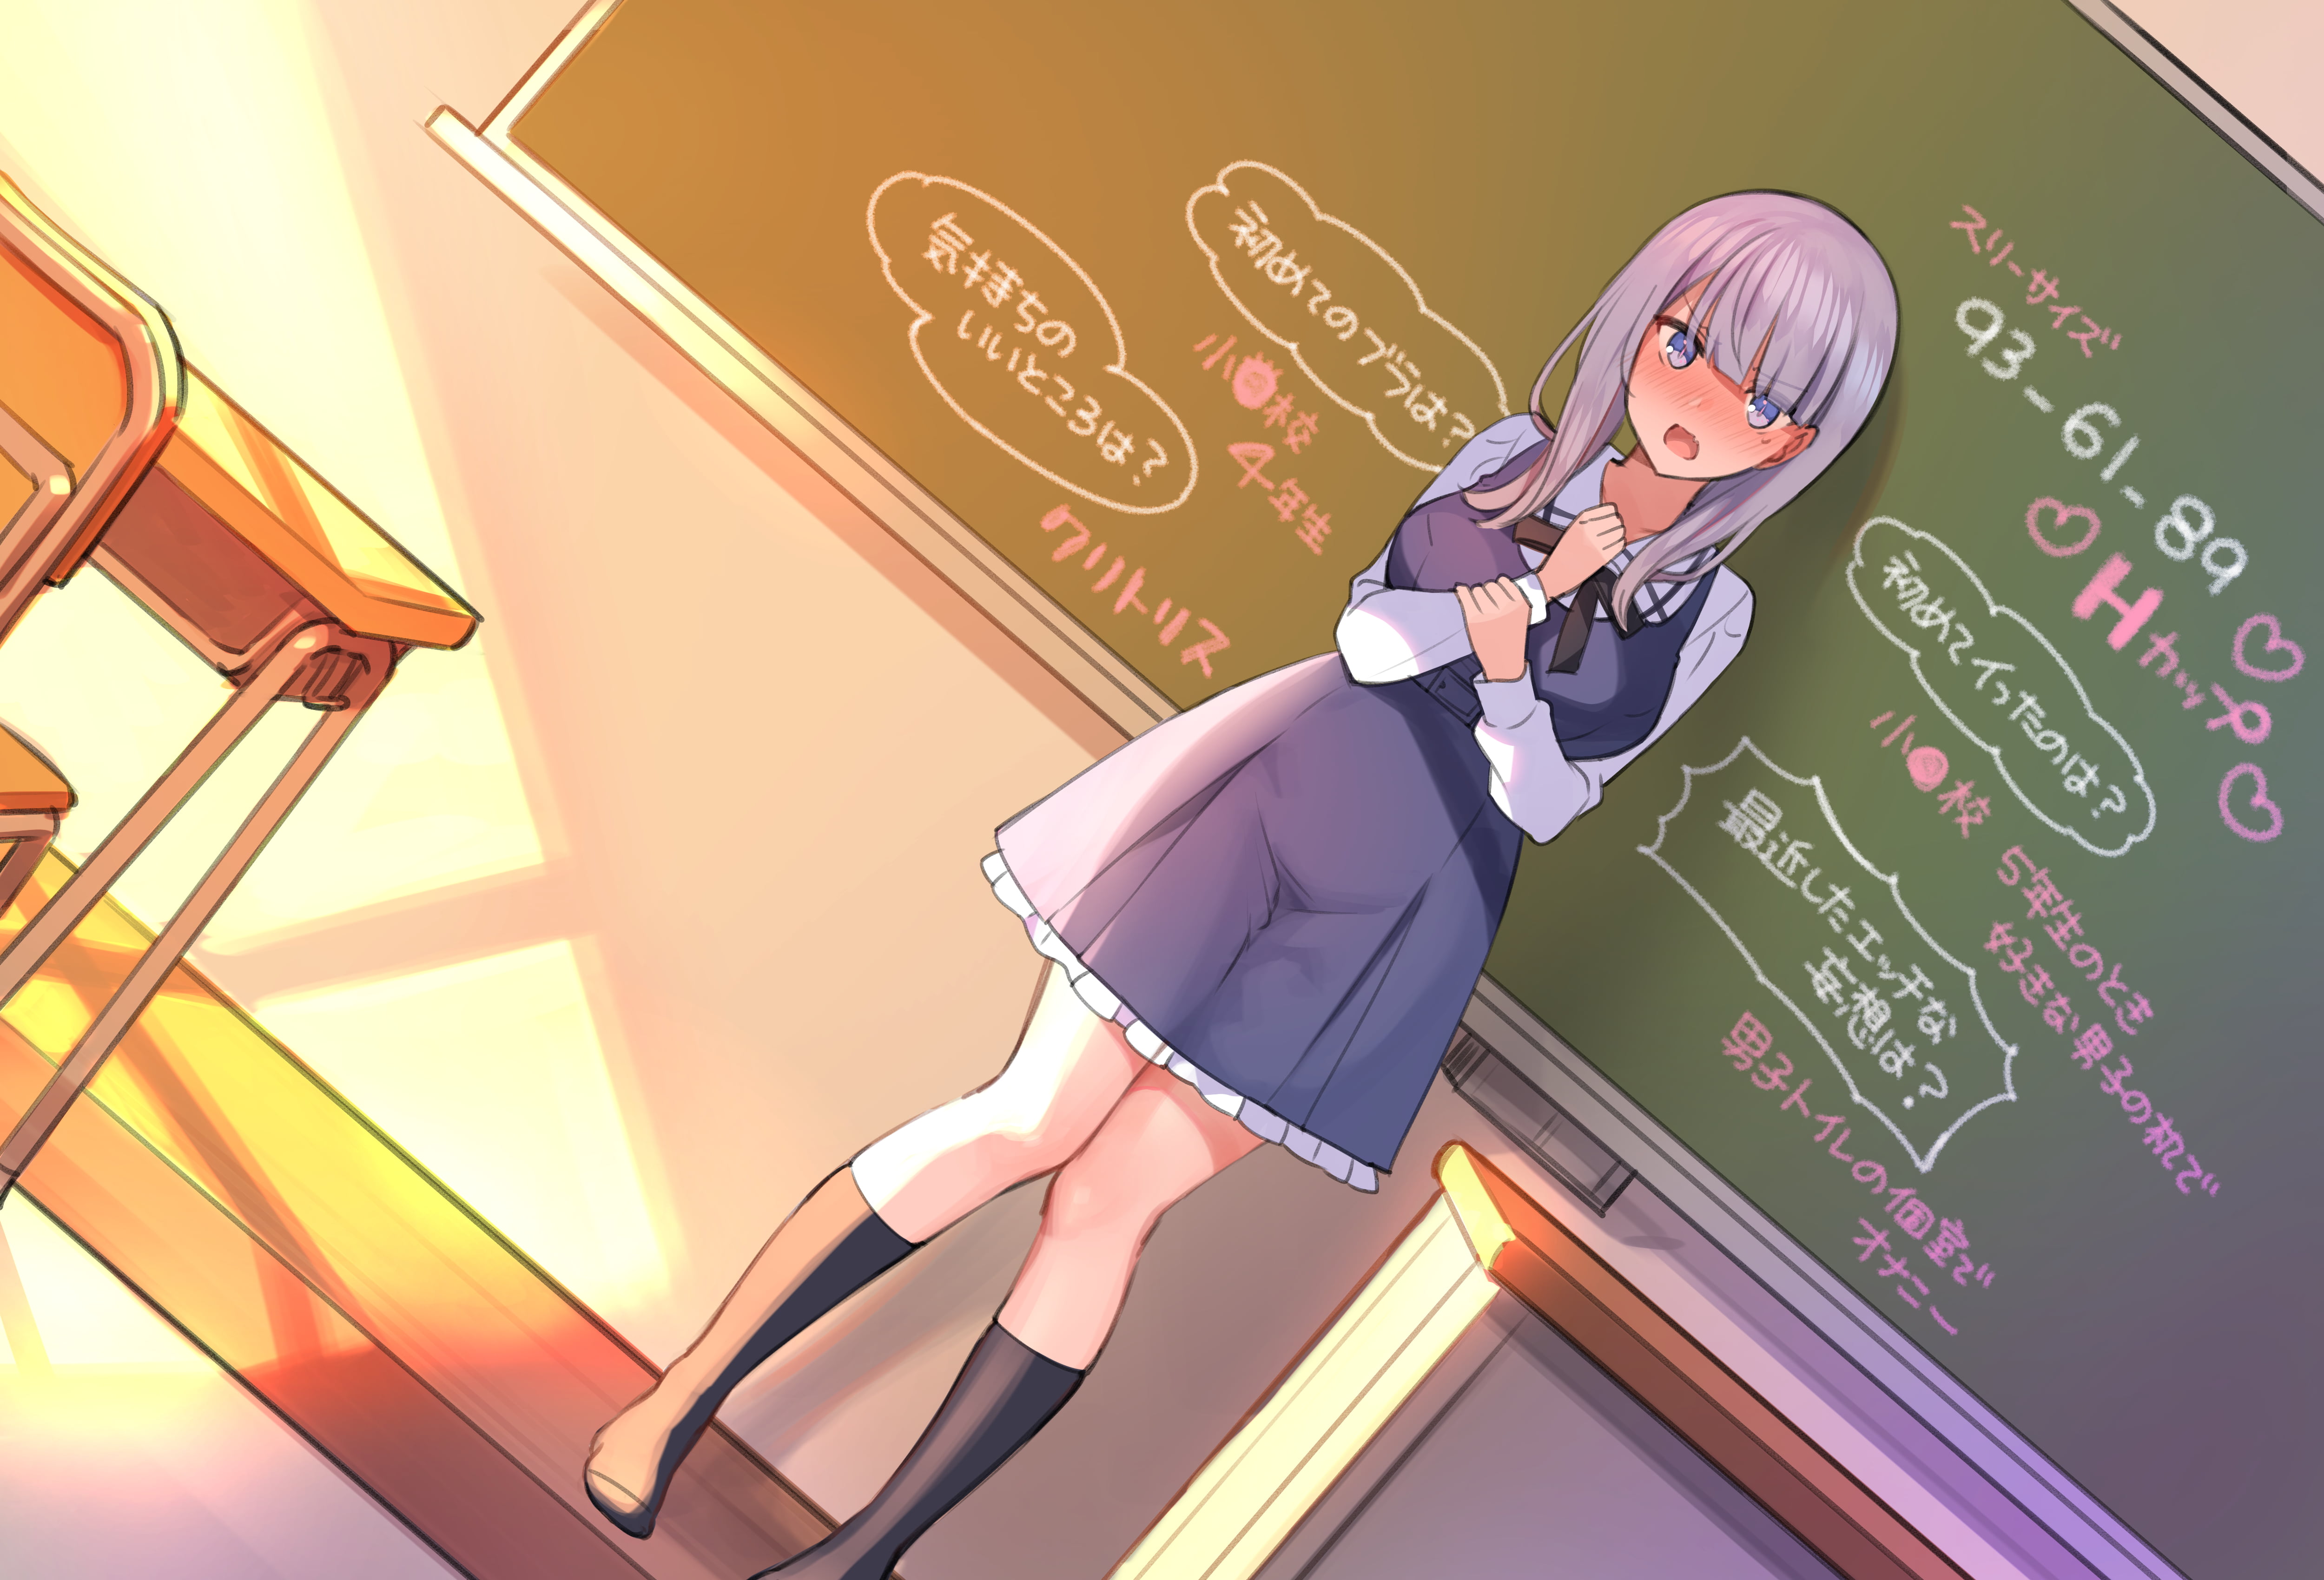 Free Download Hd Wallpaper Mankai Kaika Anime Anime Girls Blushing Purple Hair School